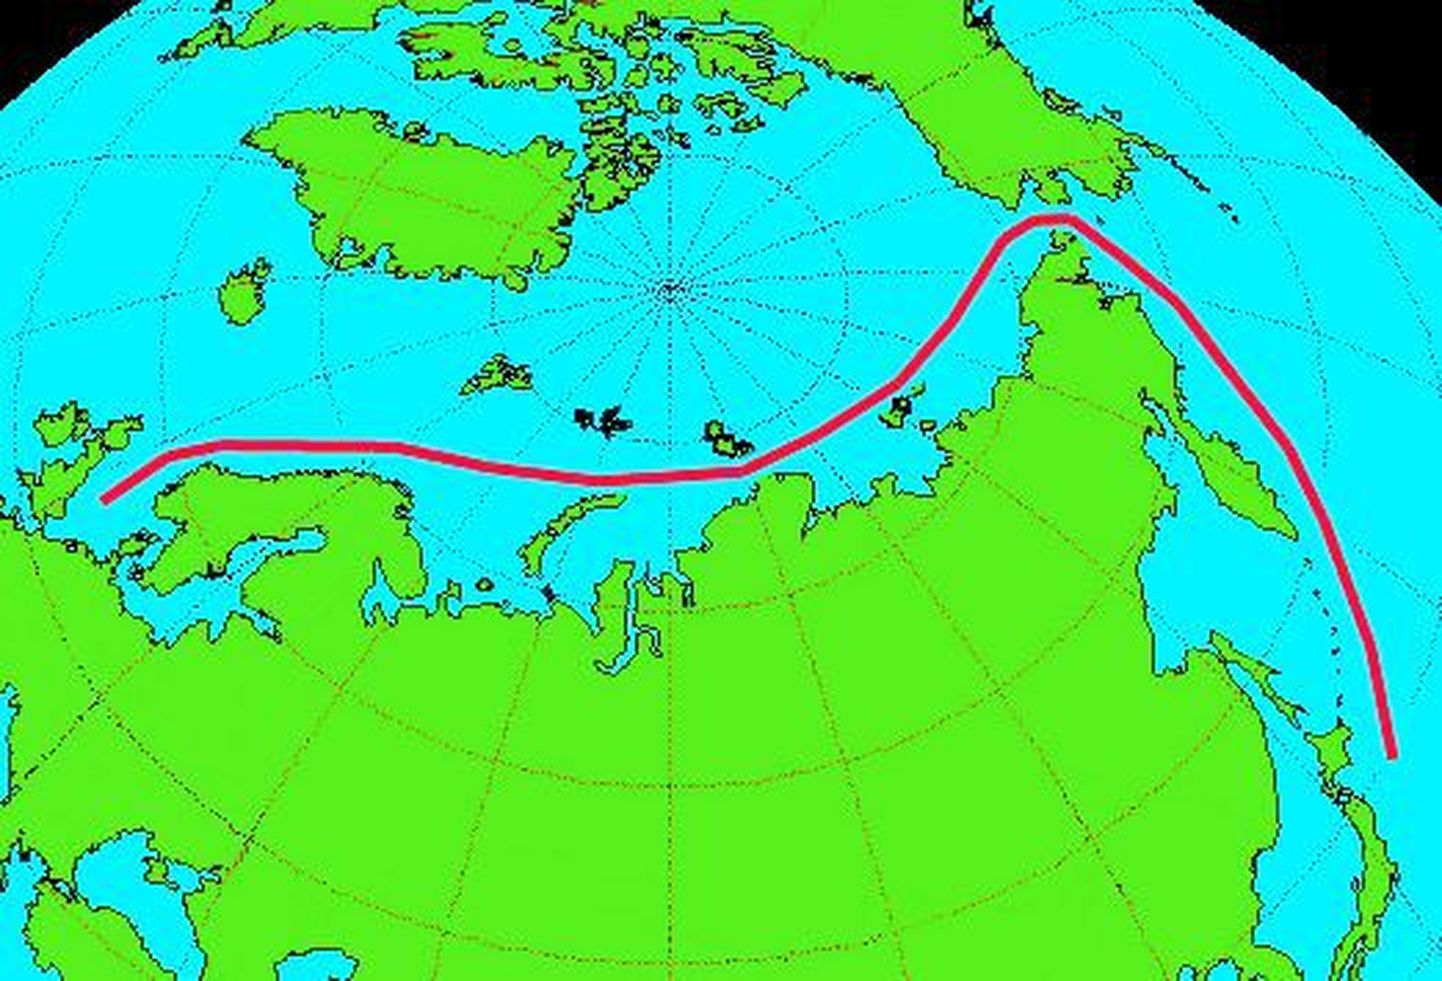 Kirdeväil ehk Põhja-meretee on veetee Euroopast Kaug-Itta piki Euraasia põhjarannikut